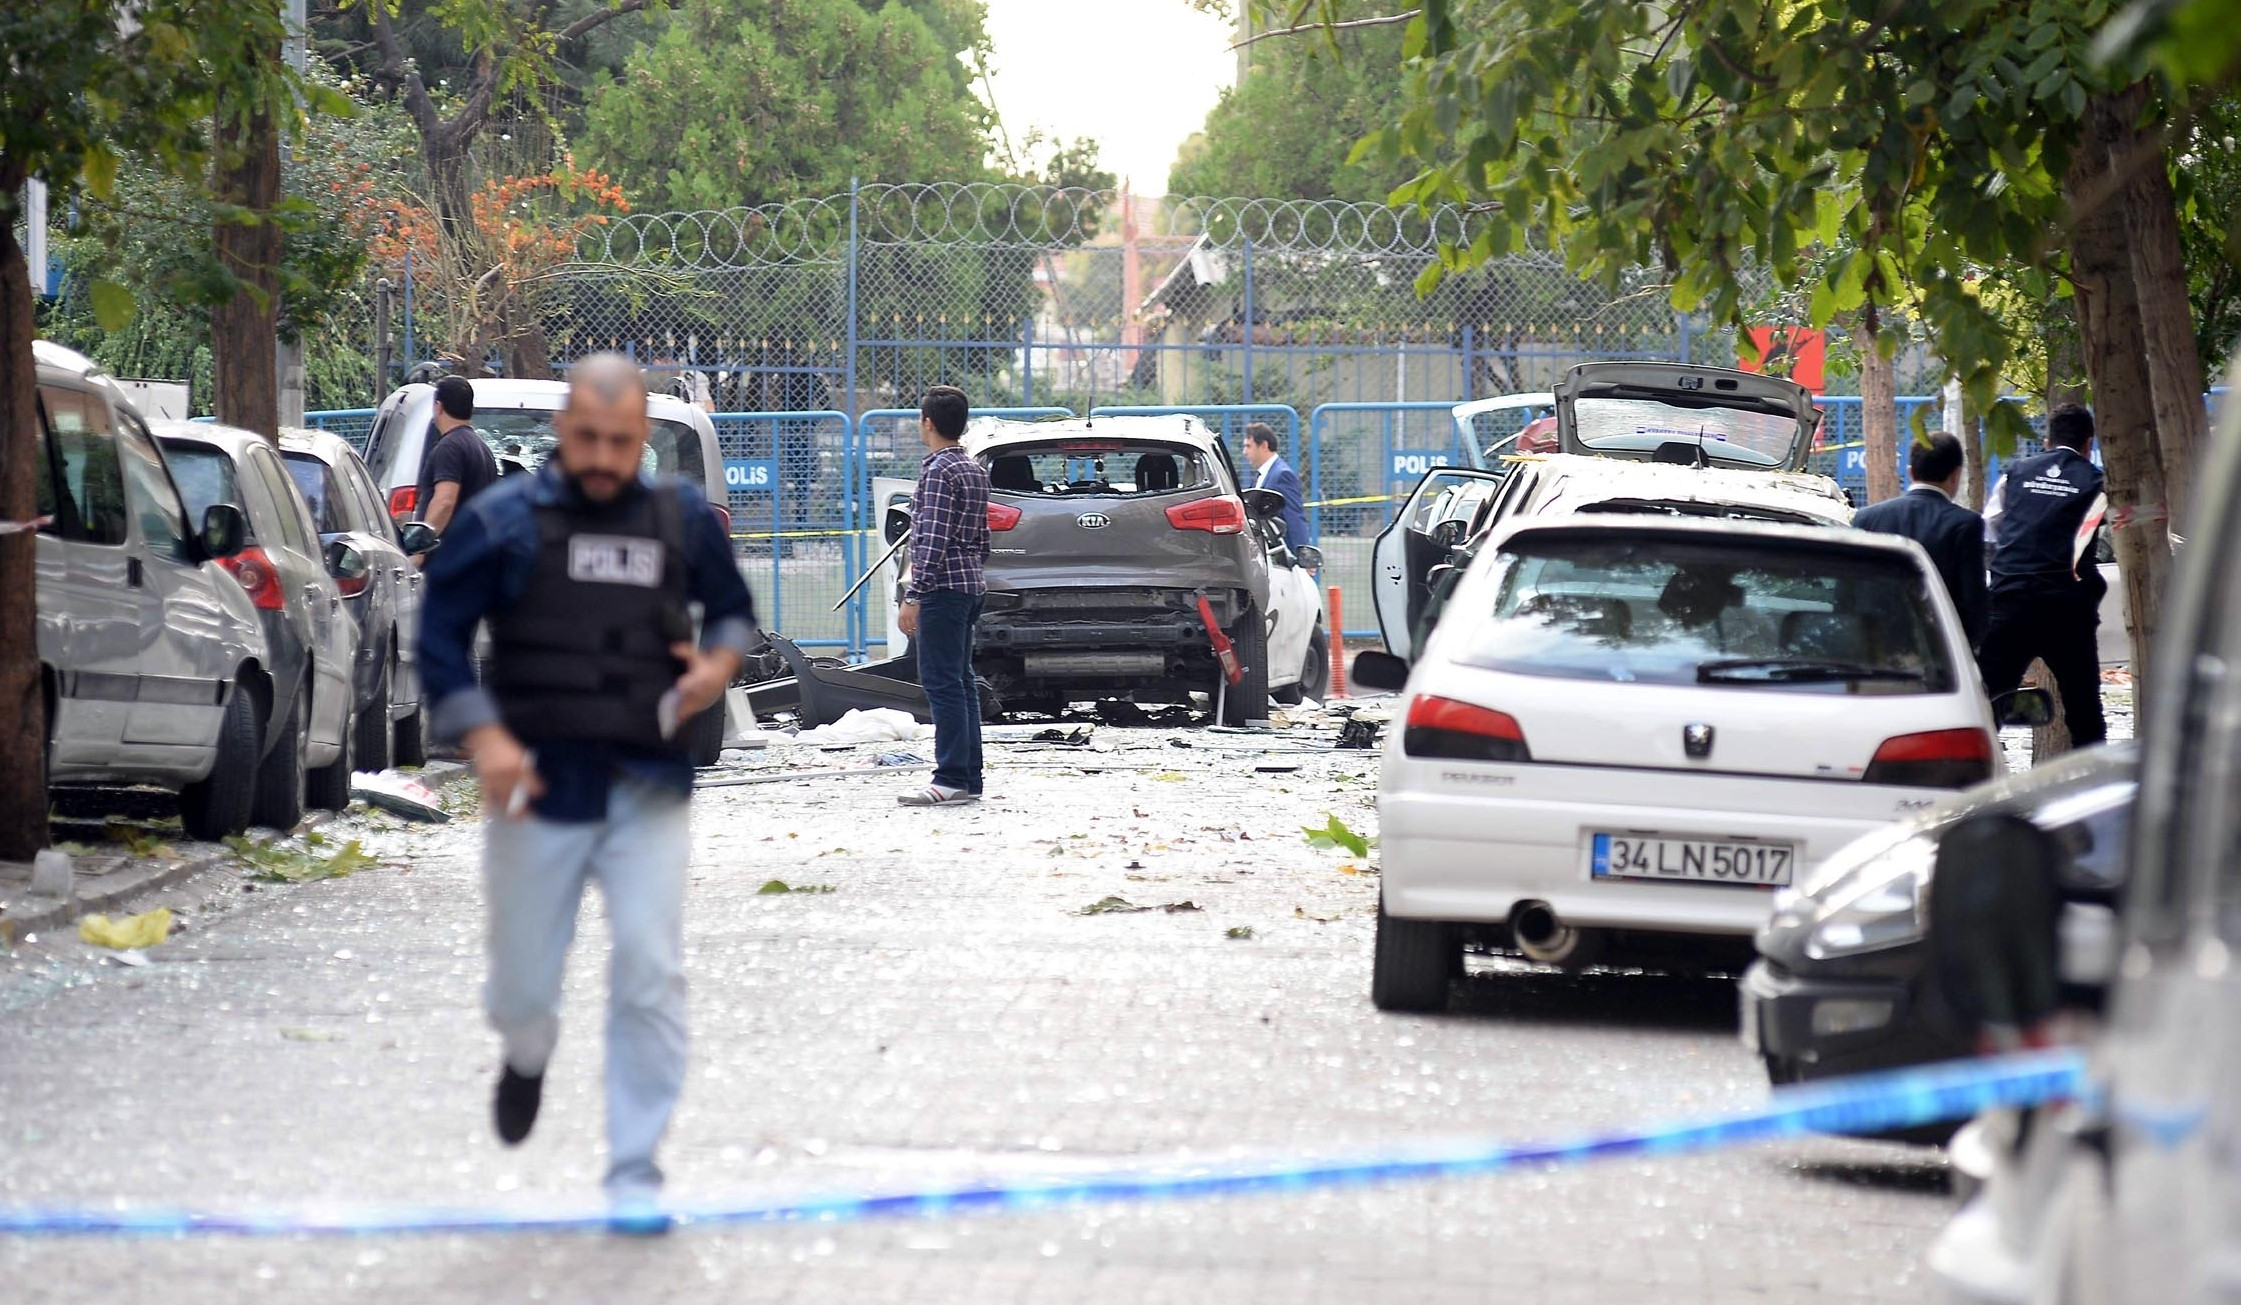 Yenibosna'daki terör saldırısının ardından bölgeye çok sayıda polis ekibi sevk edilmiş ve patlamanın olduğu alan güvenlik çemberine alınmıştı.